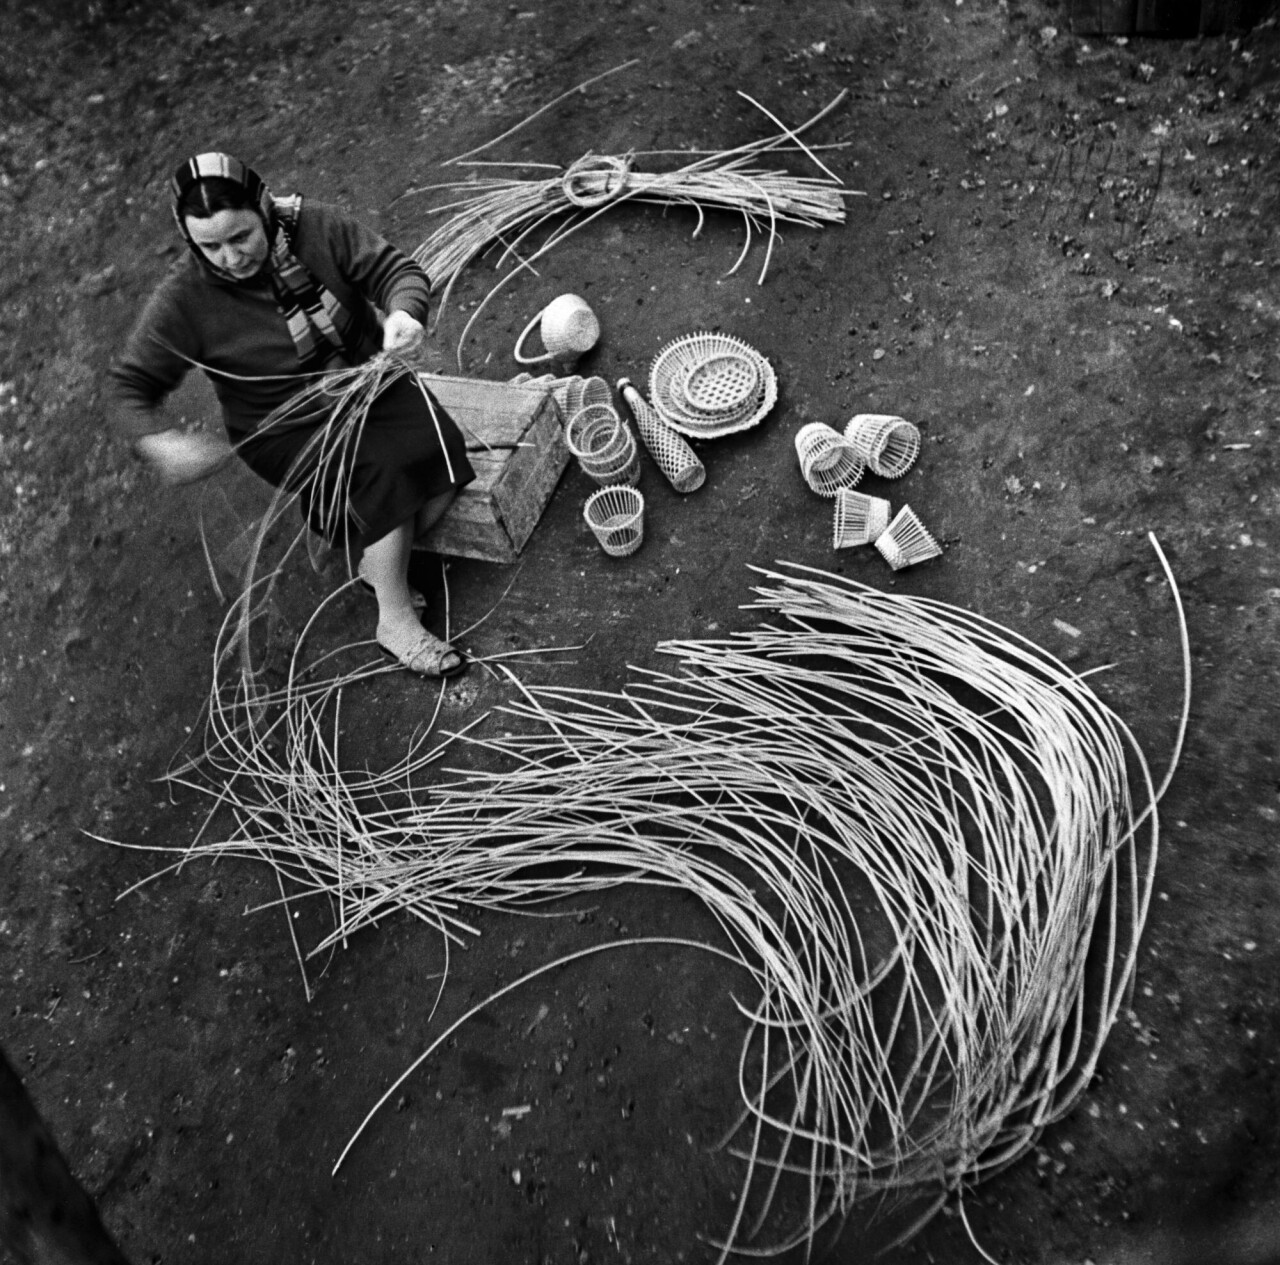 Сумка плетеная, 1965 год, фотограф Антанас Суткус